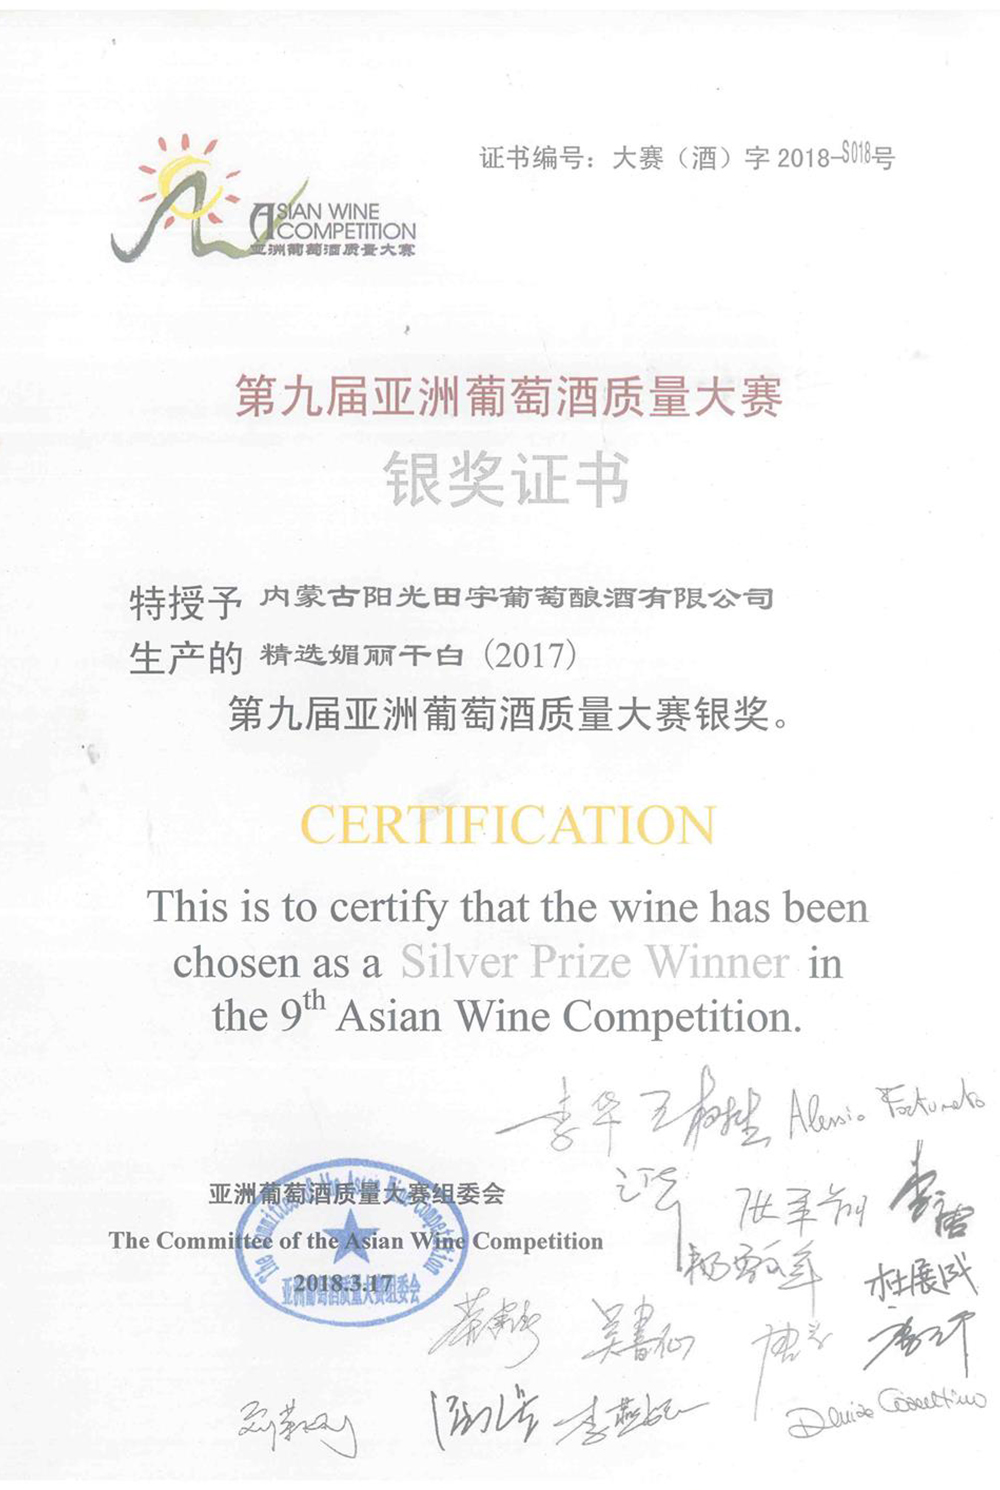 阳光田宇精选媚丽干白（2017）葡萄酒荣获第九届亚洲葡萄酒质量大赛银奖；